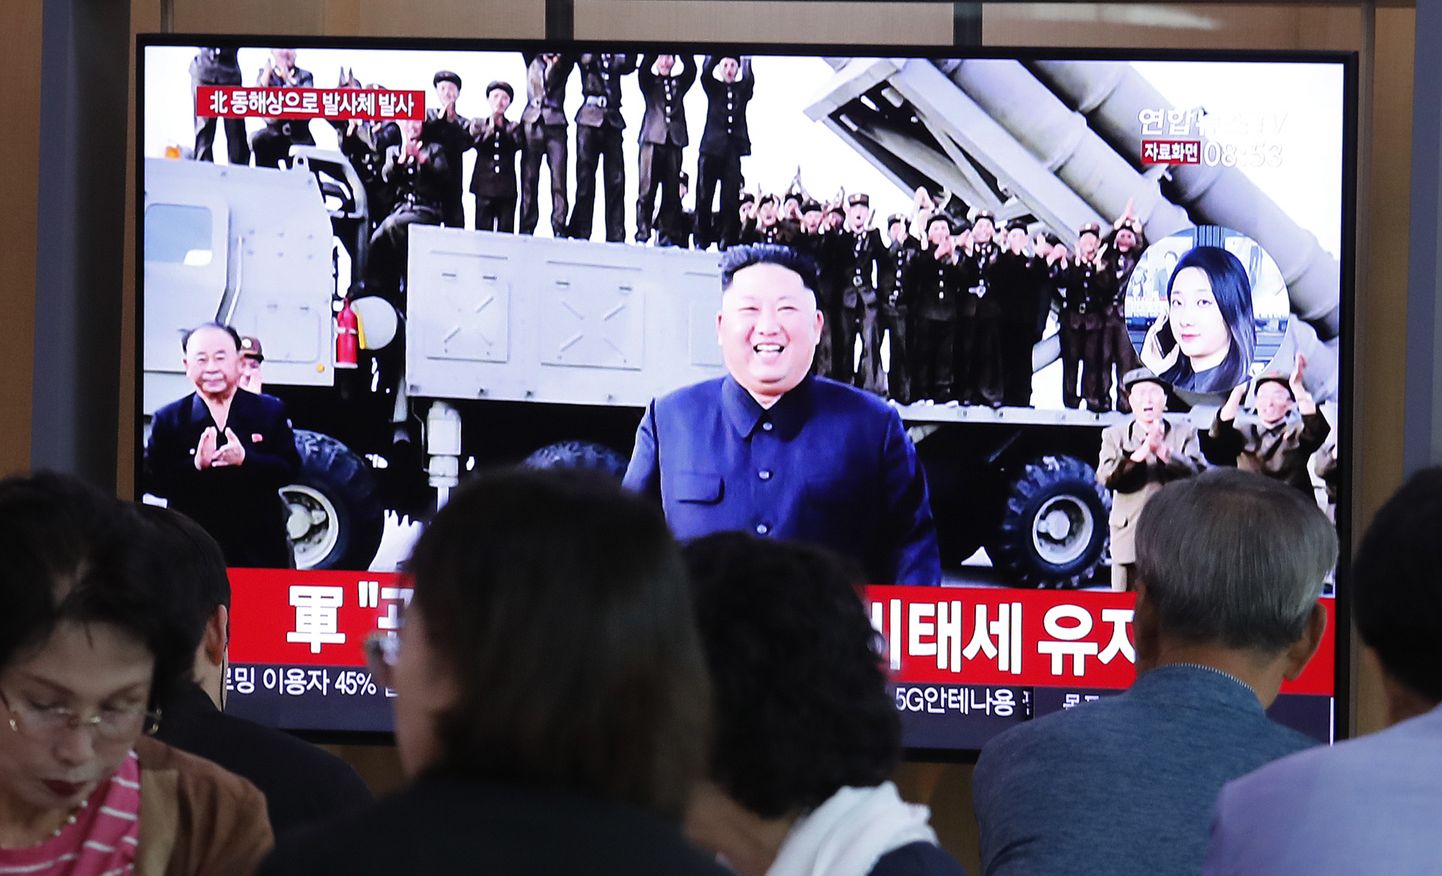 Lõunakorealased Souli raudteejaamas kuulamas uudist põhjanaabrite raketikatsetusest.